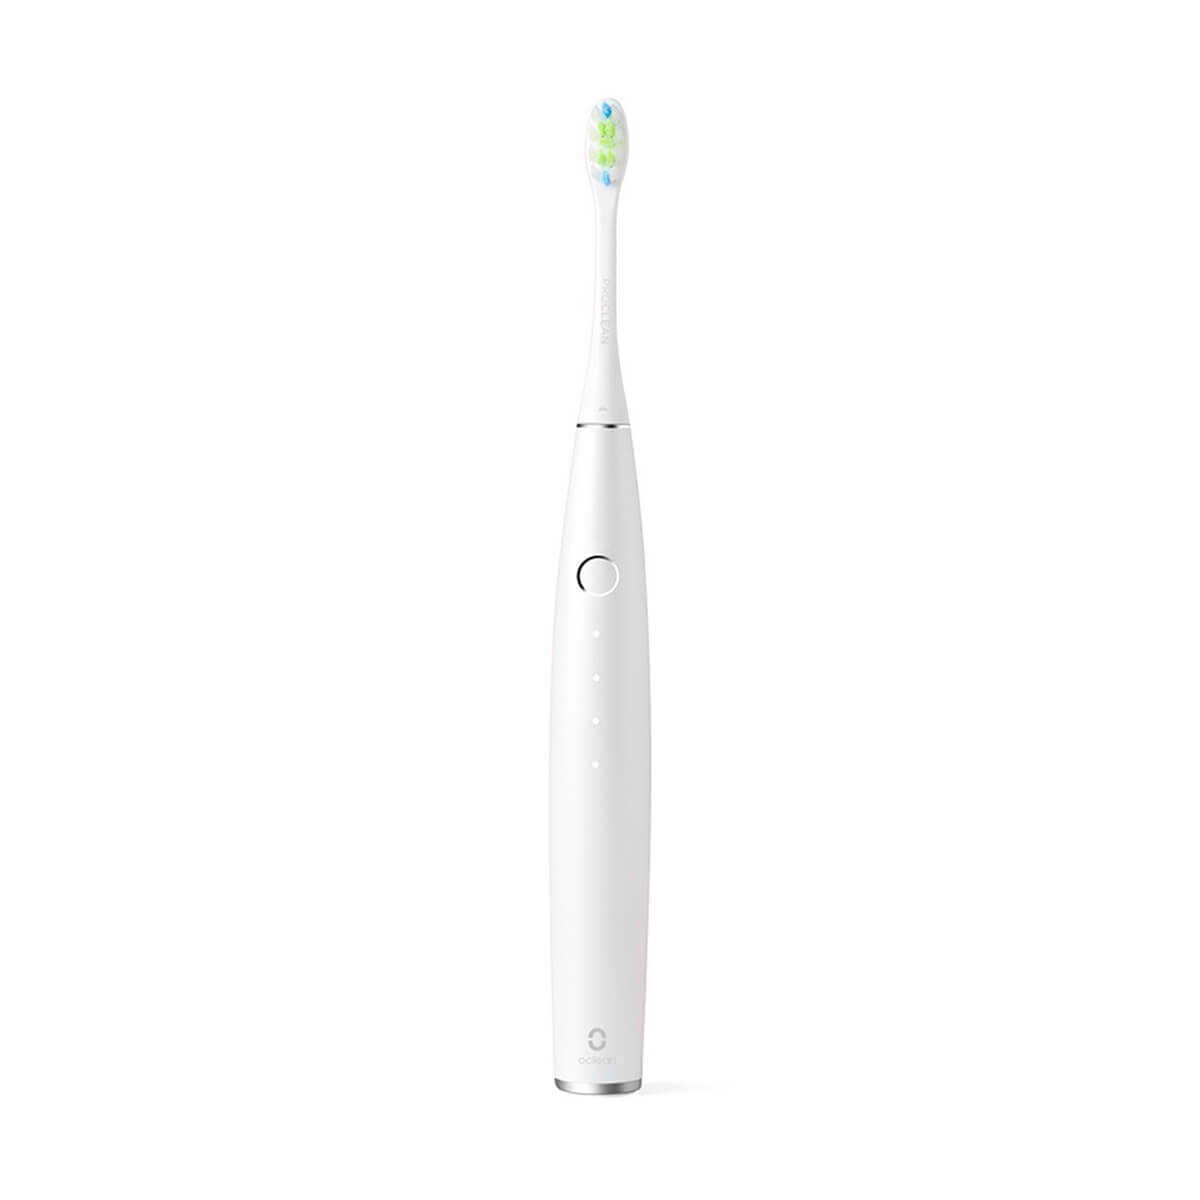 Oclean One Electric Toothbrush White (Китайская версия) (Y1S000ACW184604721) - Как новый